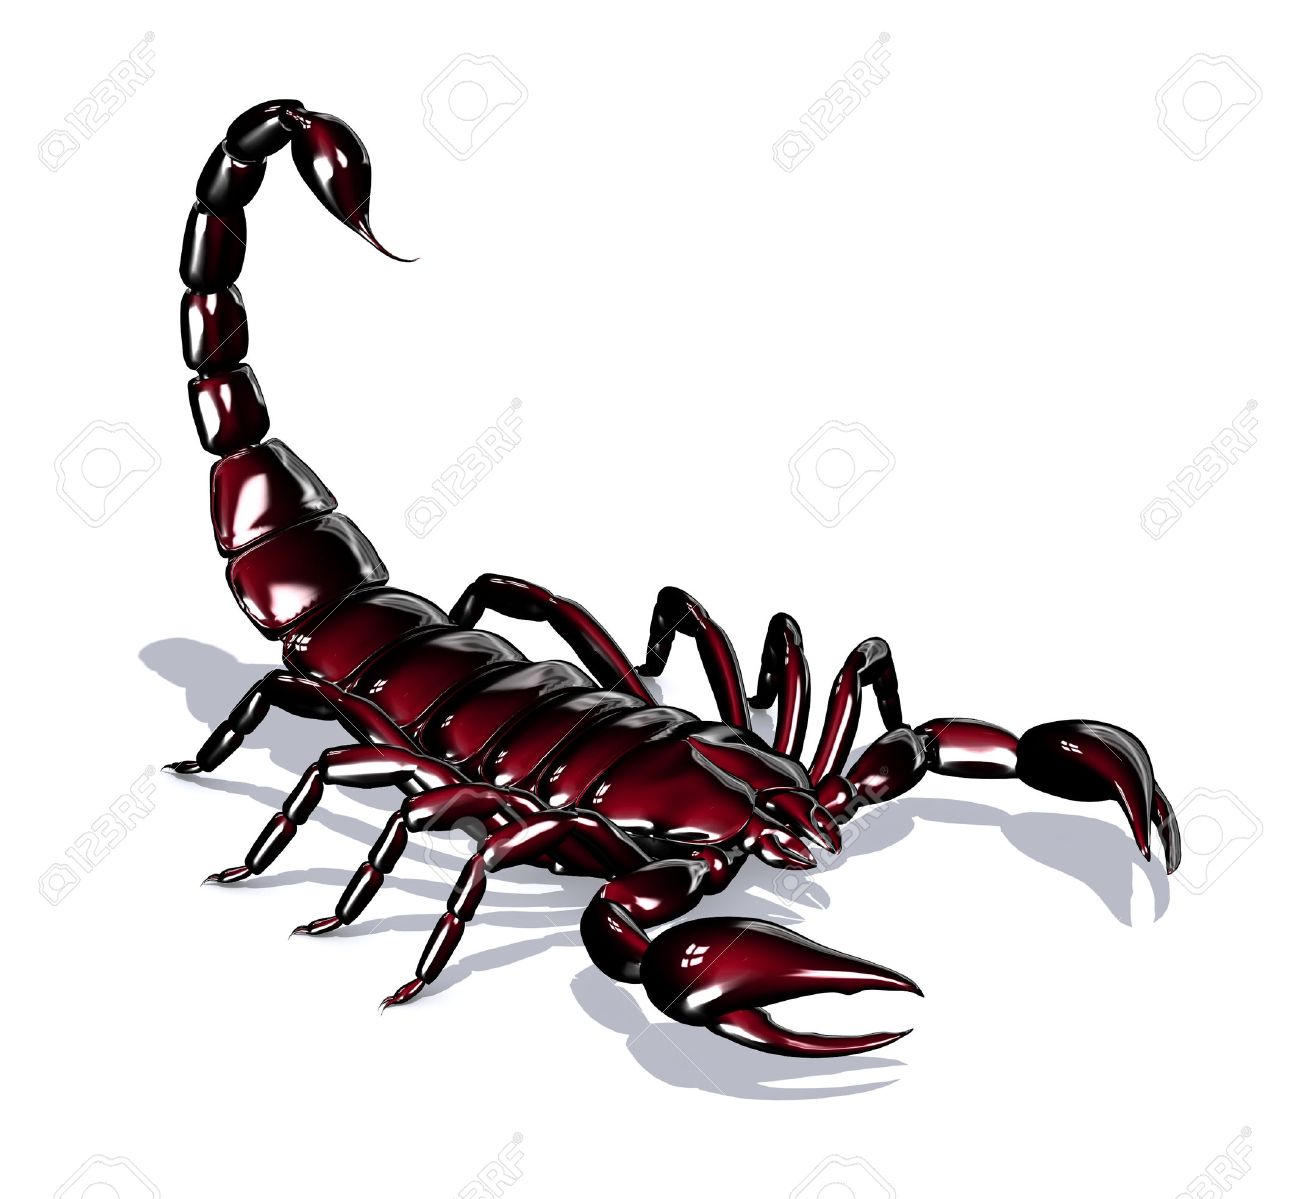 Красный Скорпион на белом фоне